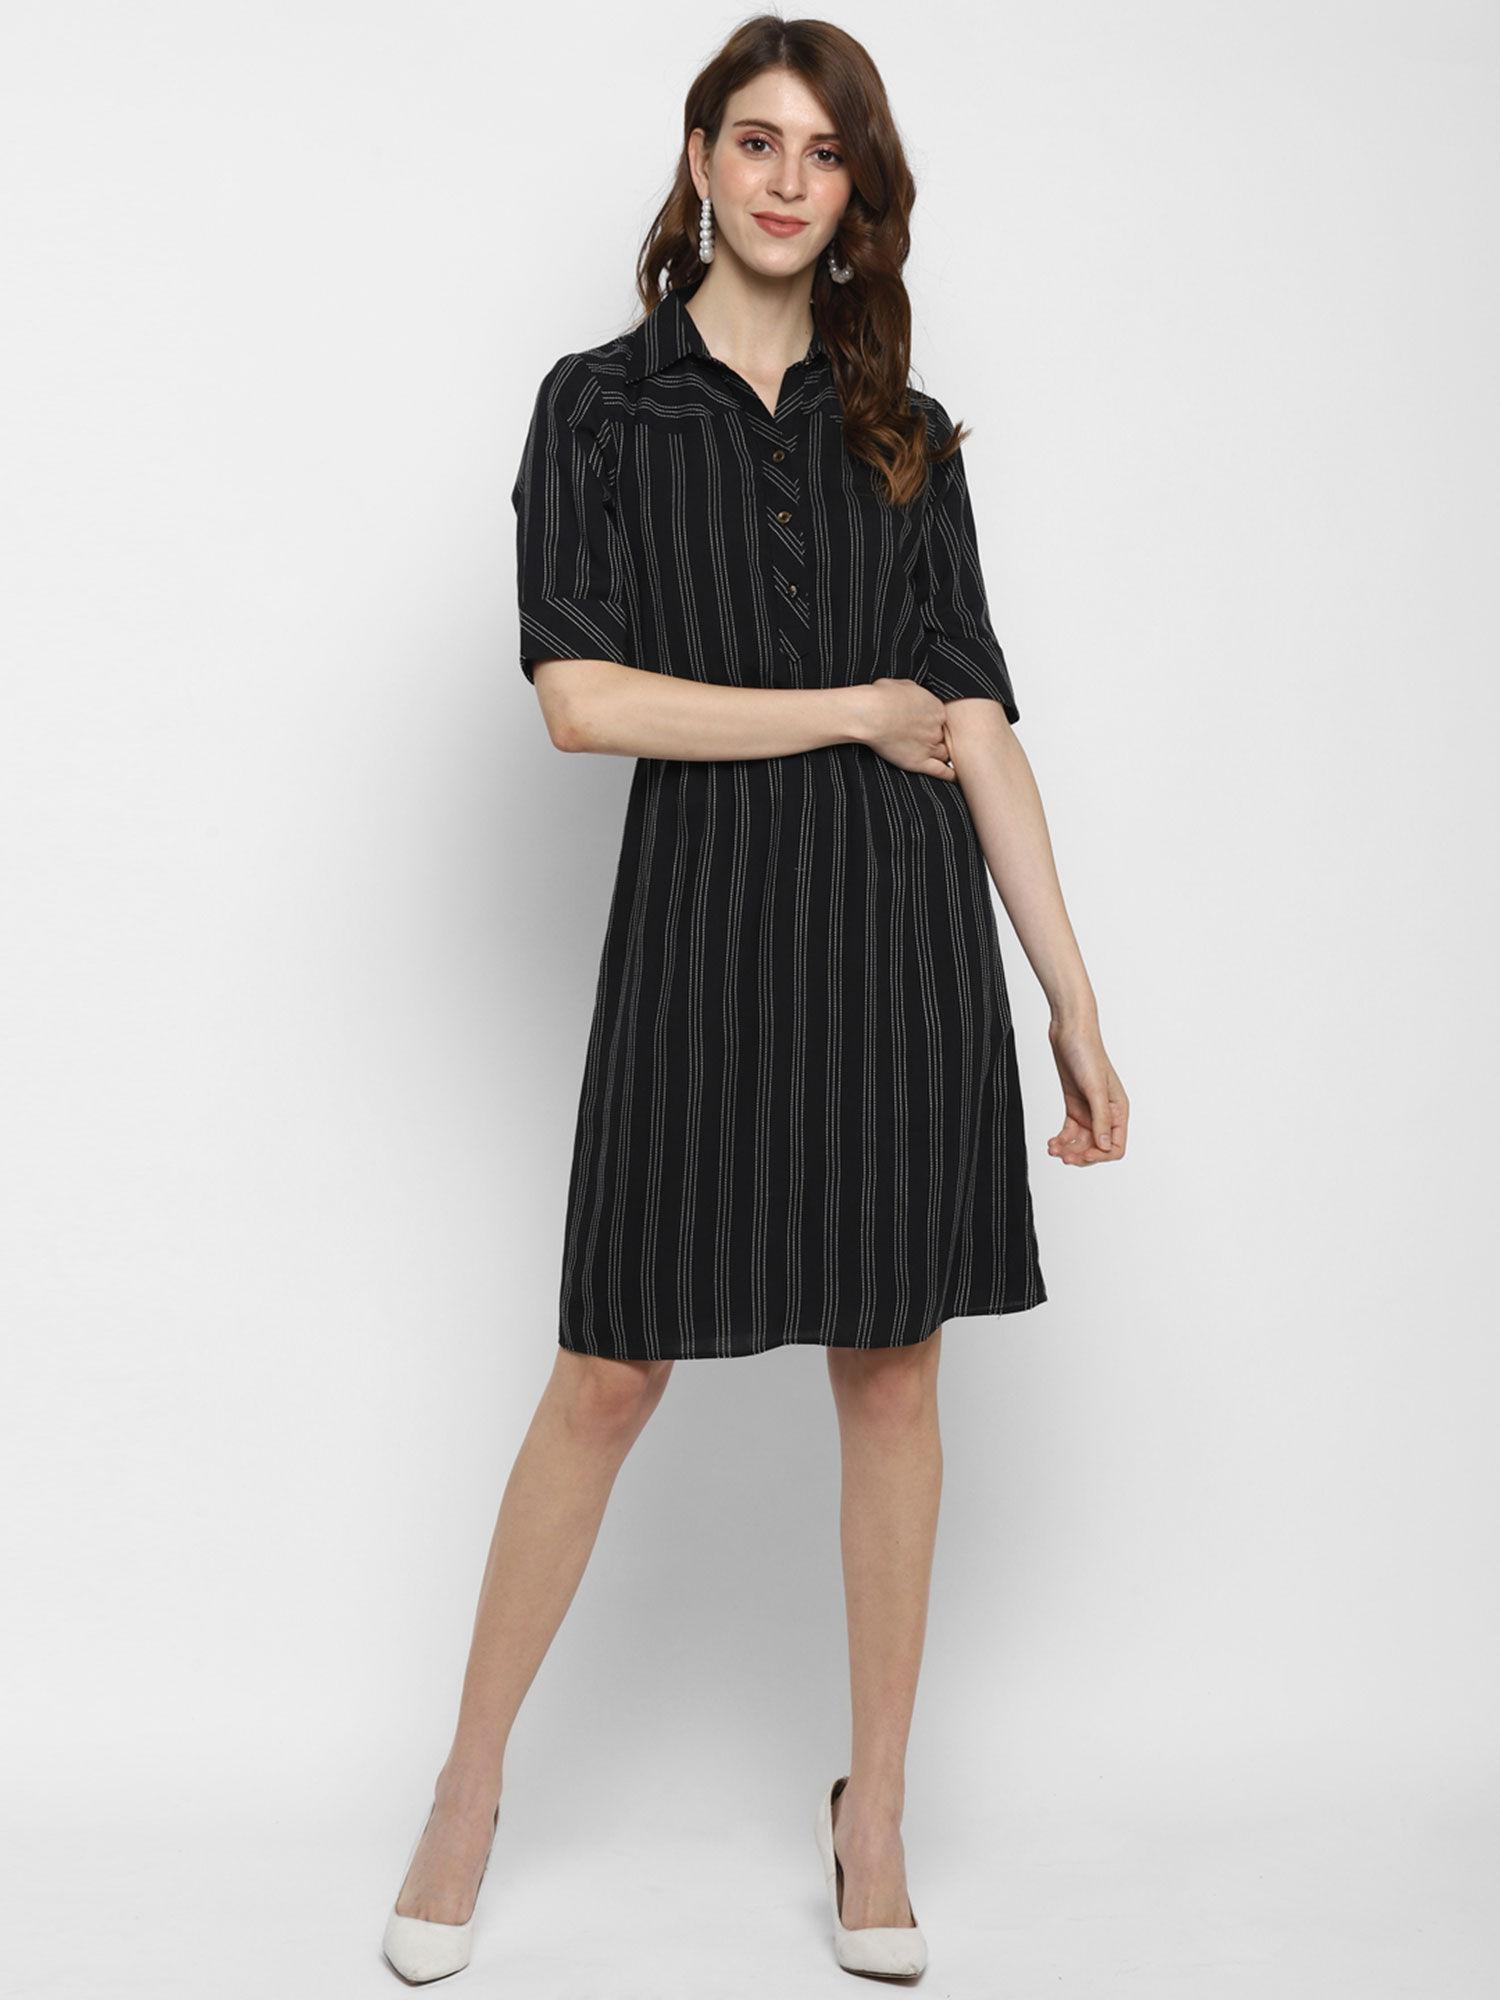 black-fit-&-flared-striped-dress